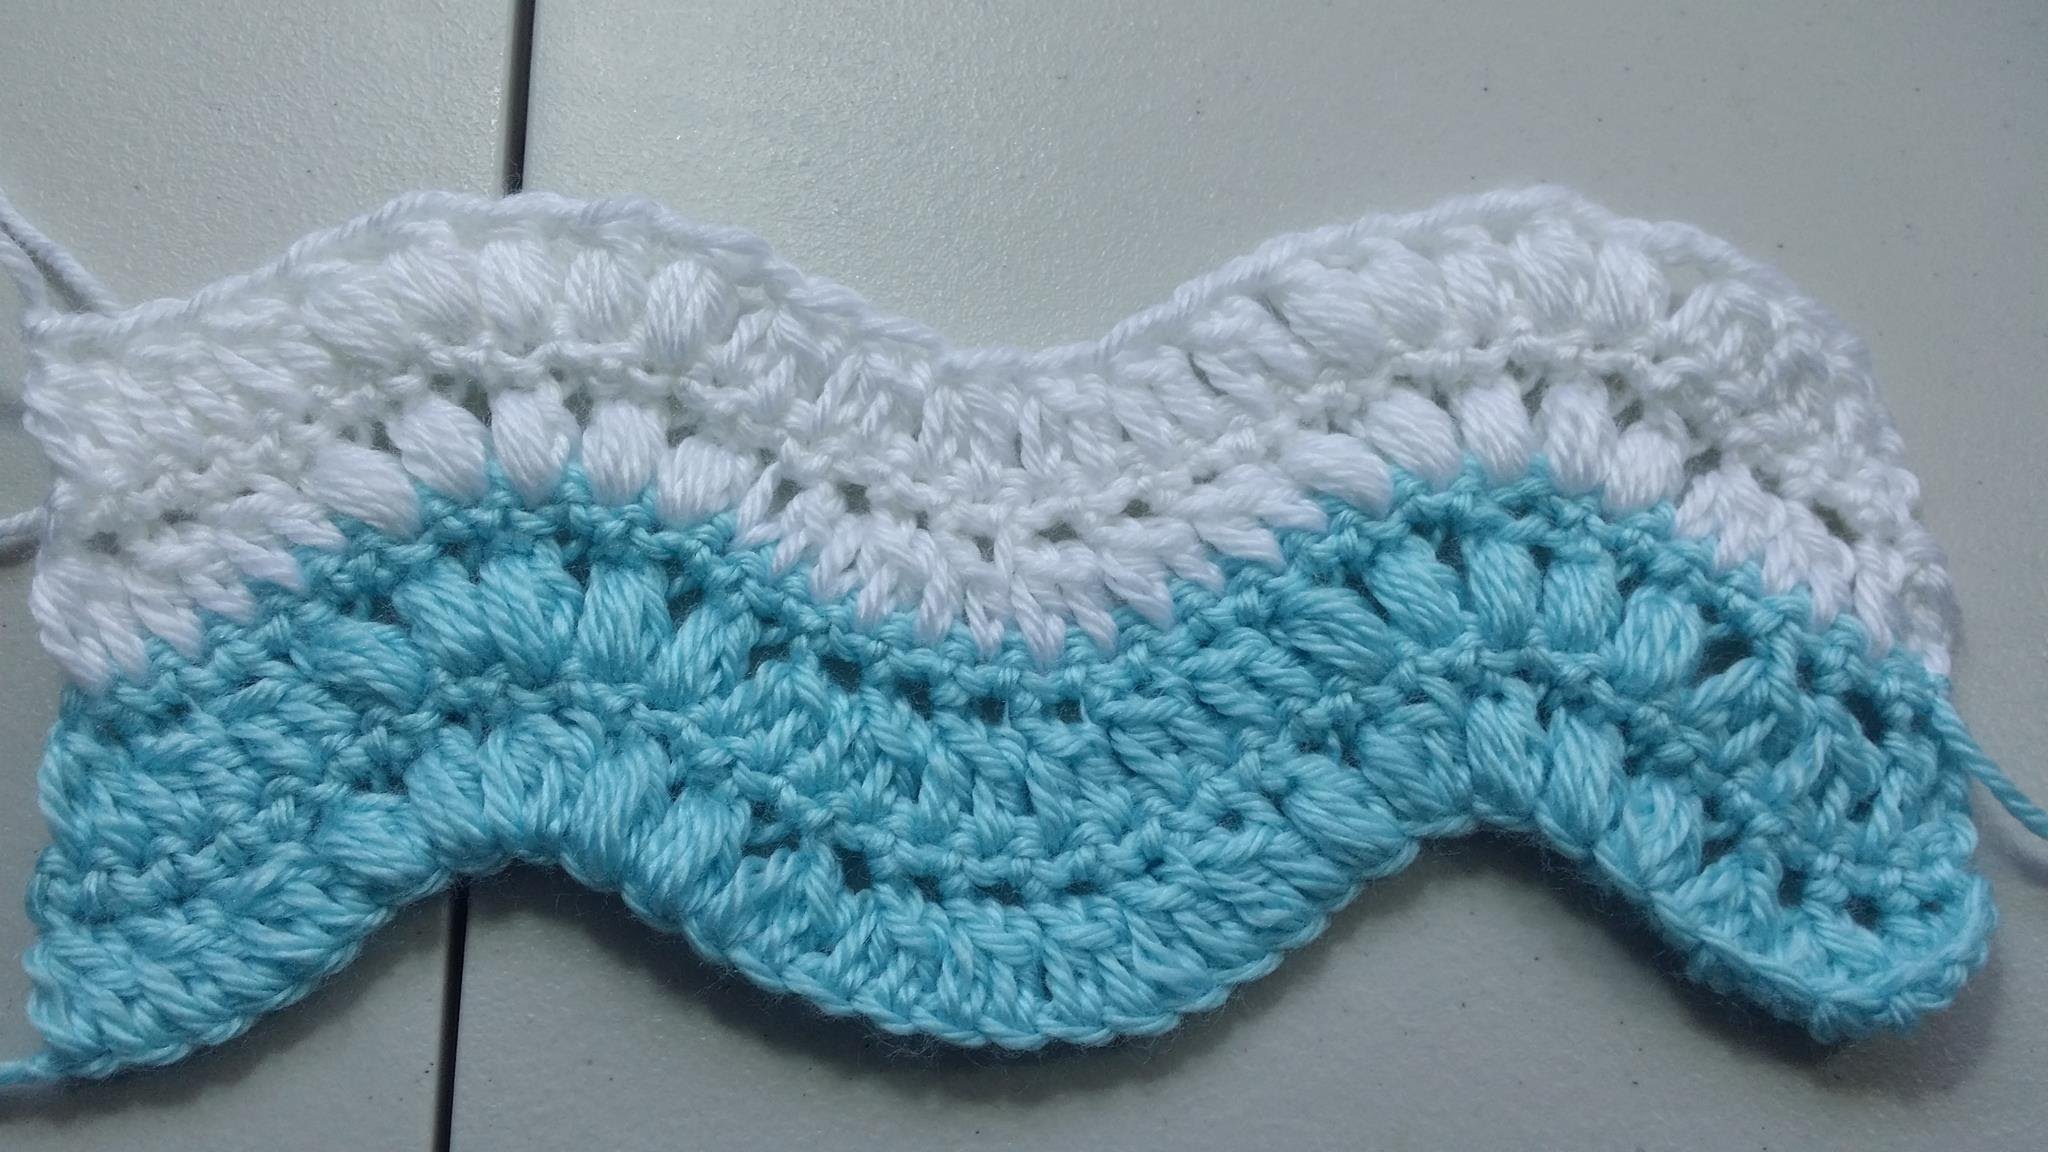 ripple crochet pattern how to crochet puff stitch ripple pattern - youtube urnmqik